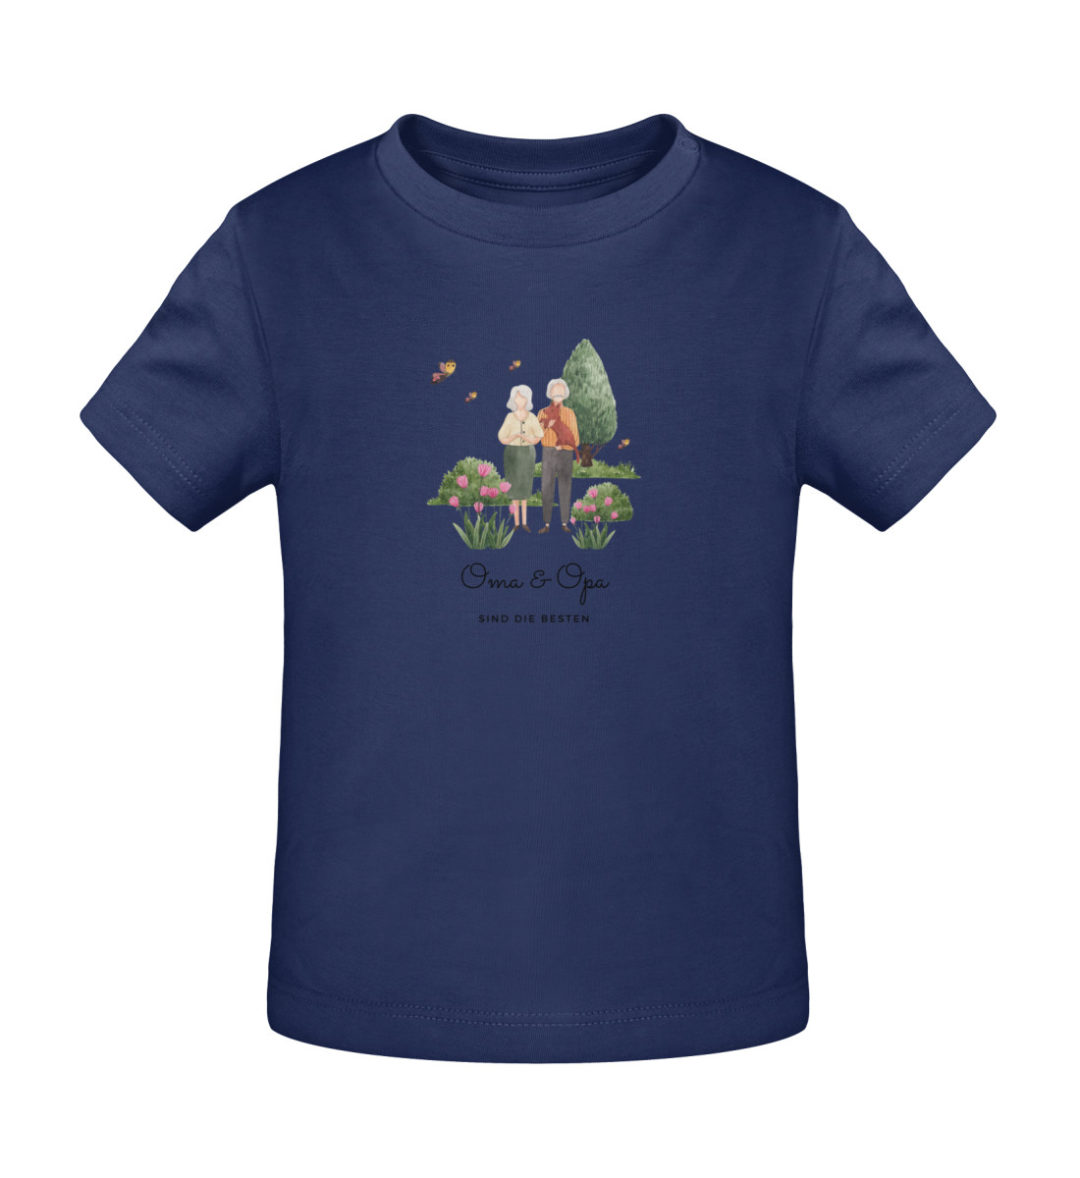 Oma & Opa sind die besten - Baby Creator T-Shirt ST/ST-6057